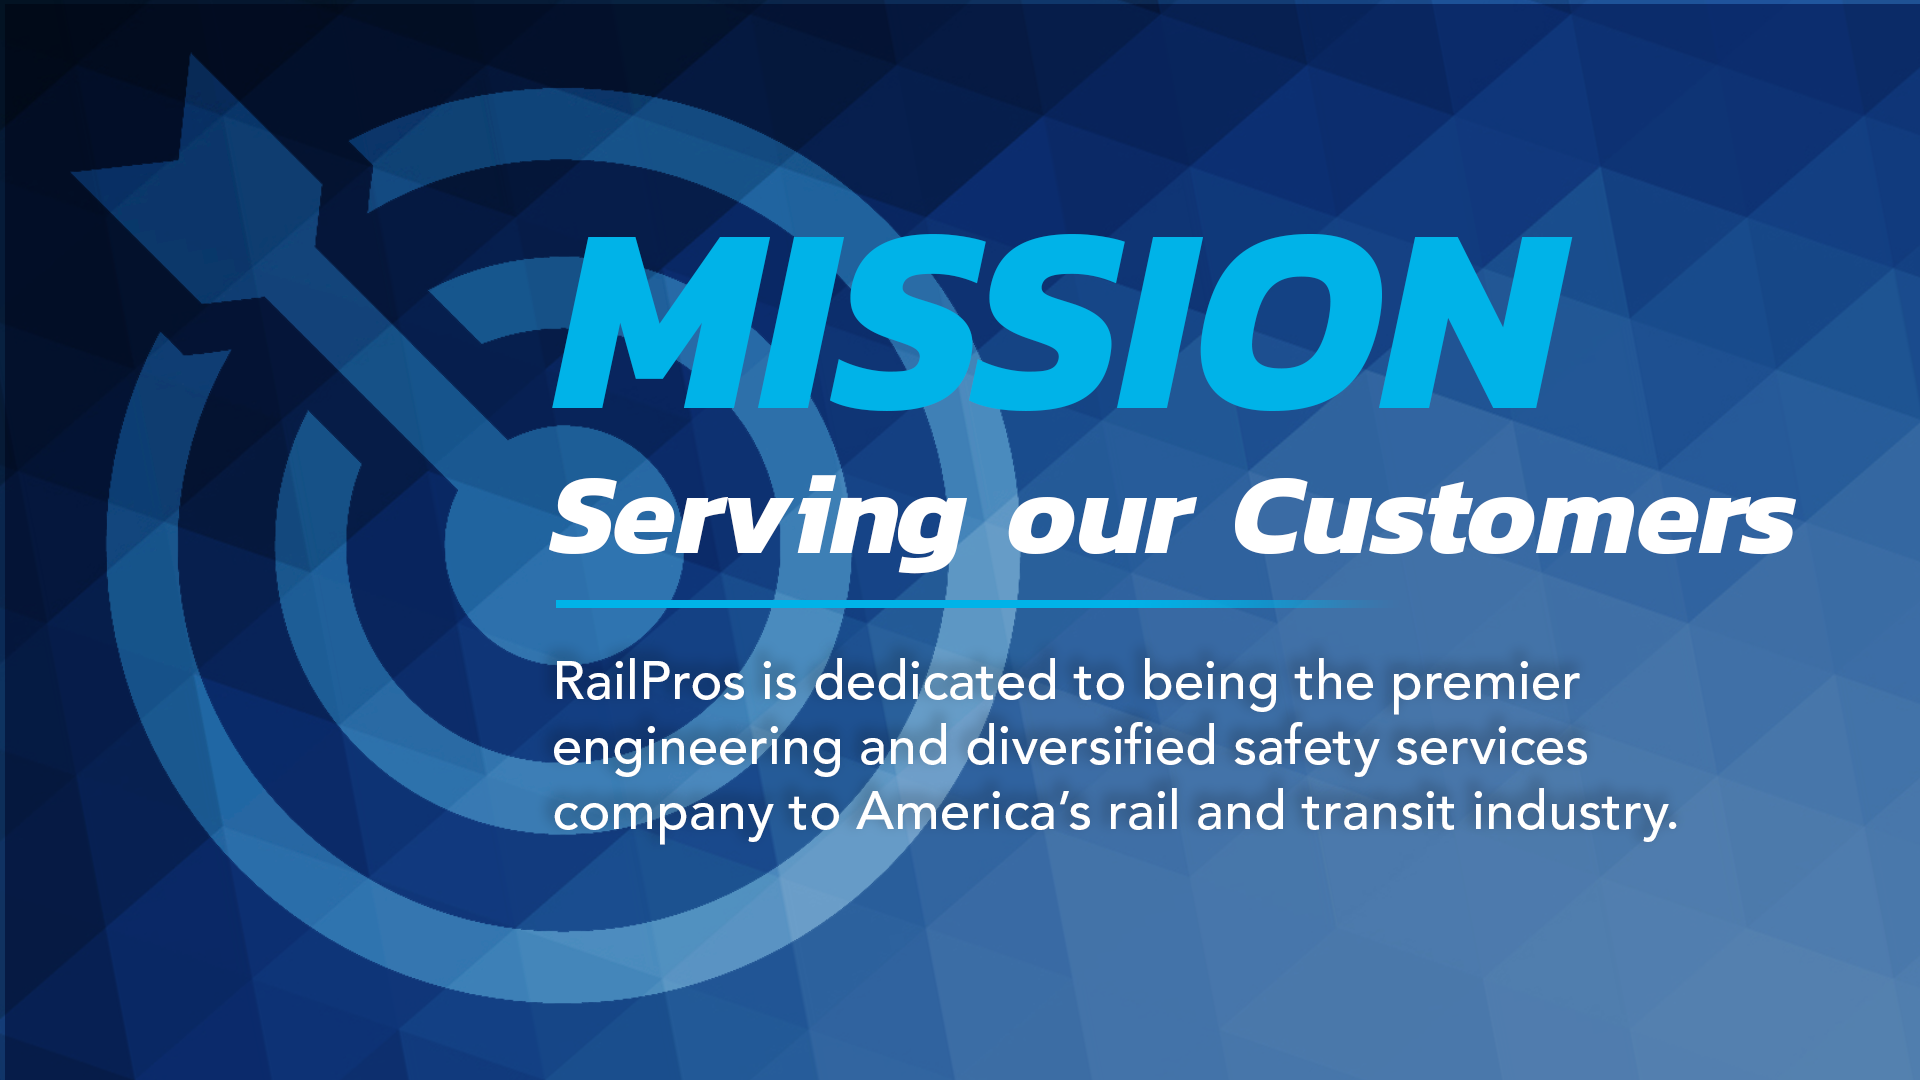 RailPros Mission Statement